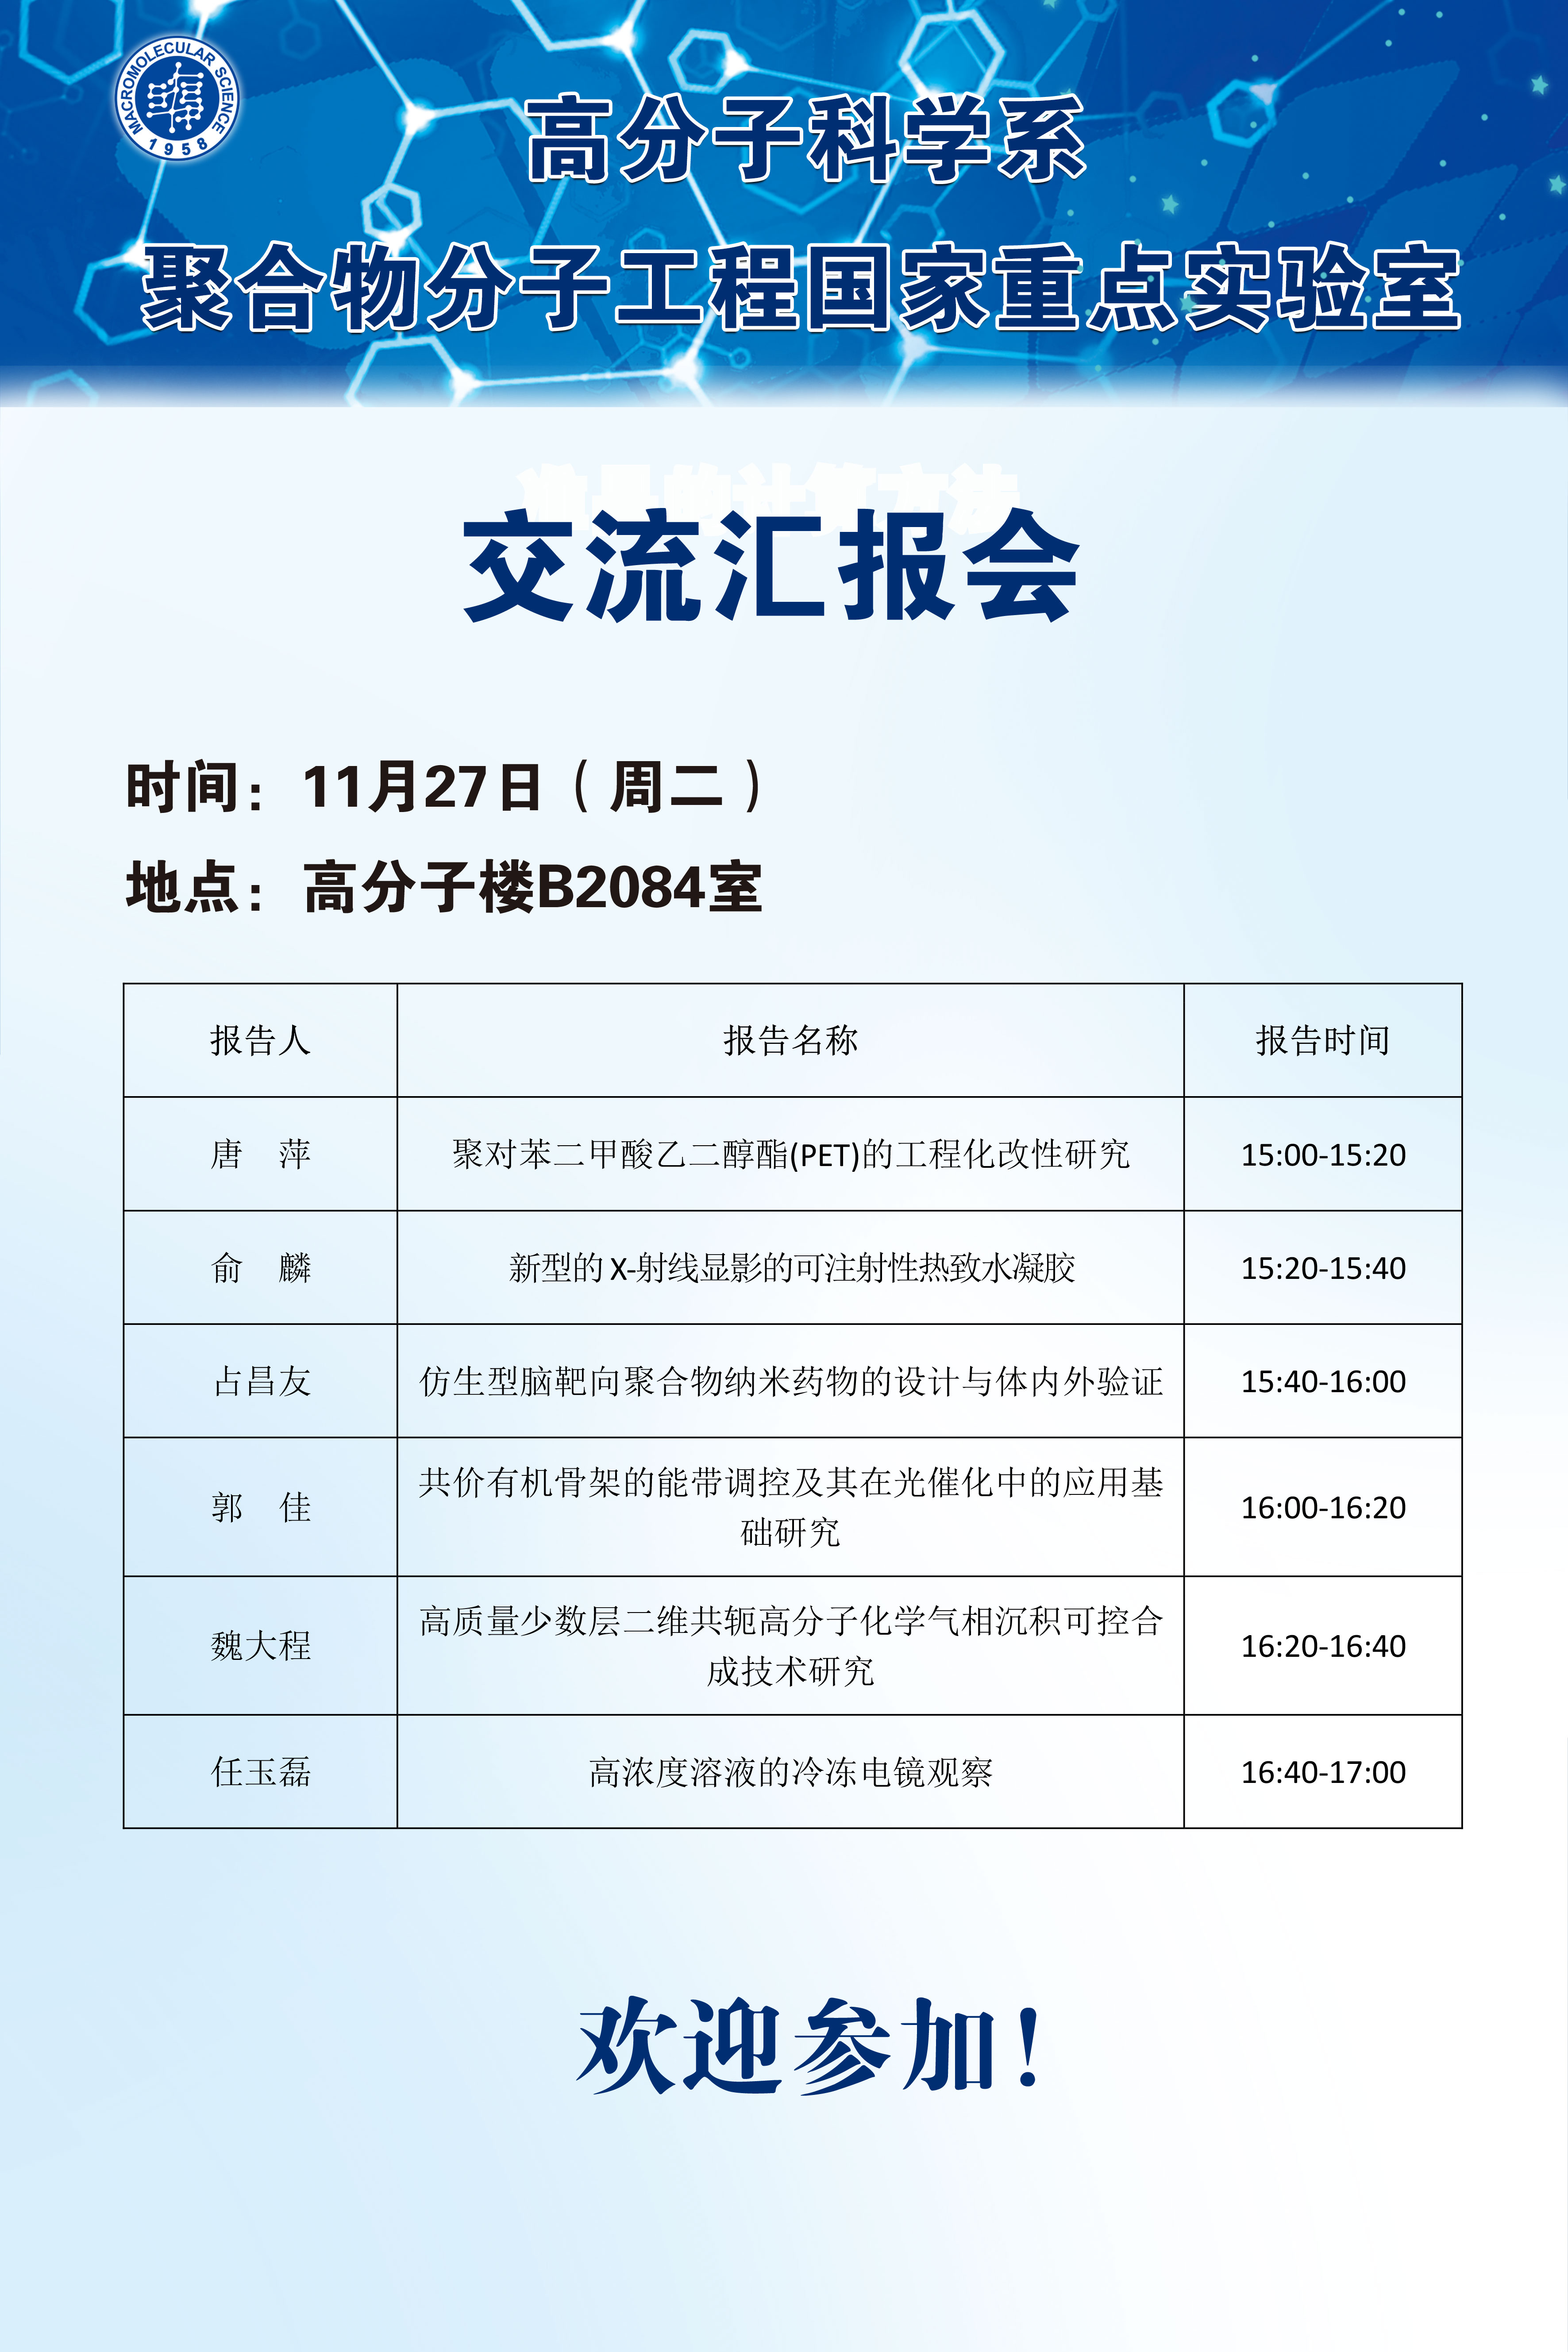 2018-11-27交流汇报会.jpg